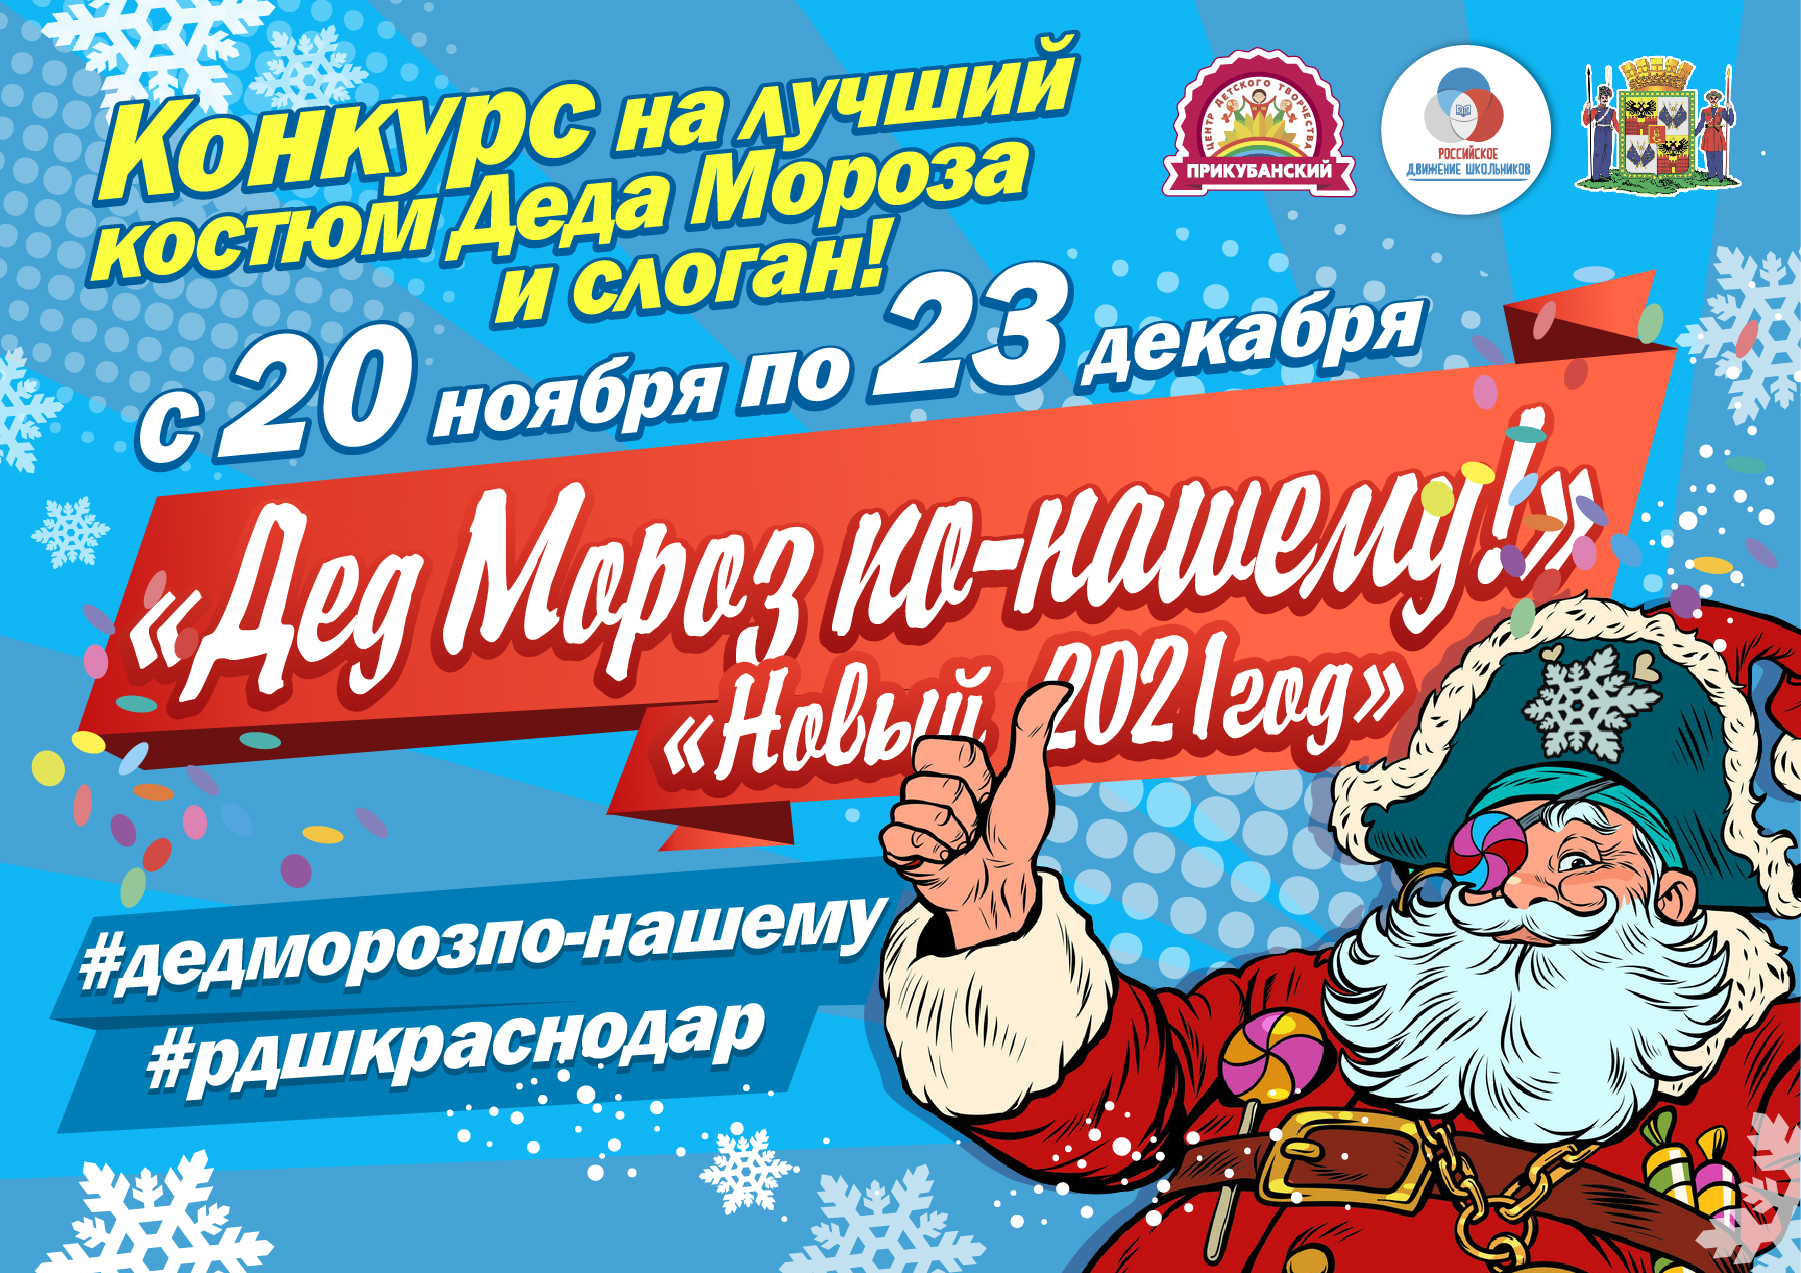 Афиша окружного конкурса "Дед Мороз по-нашему!"